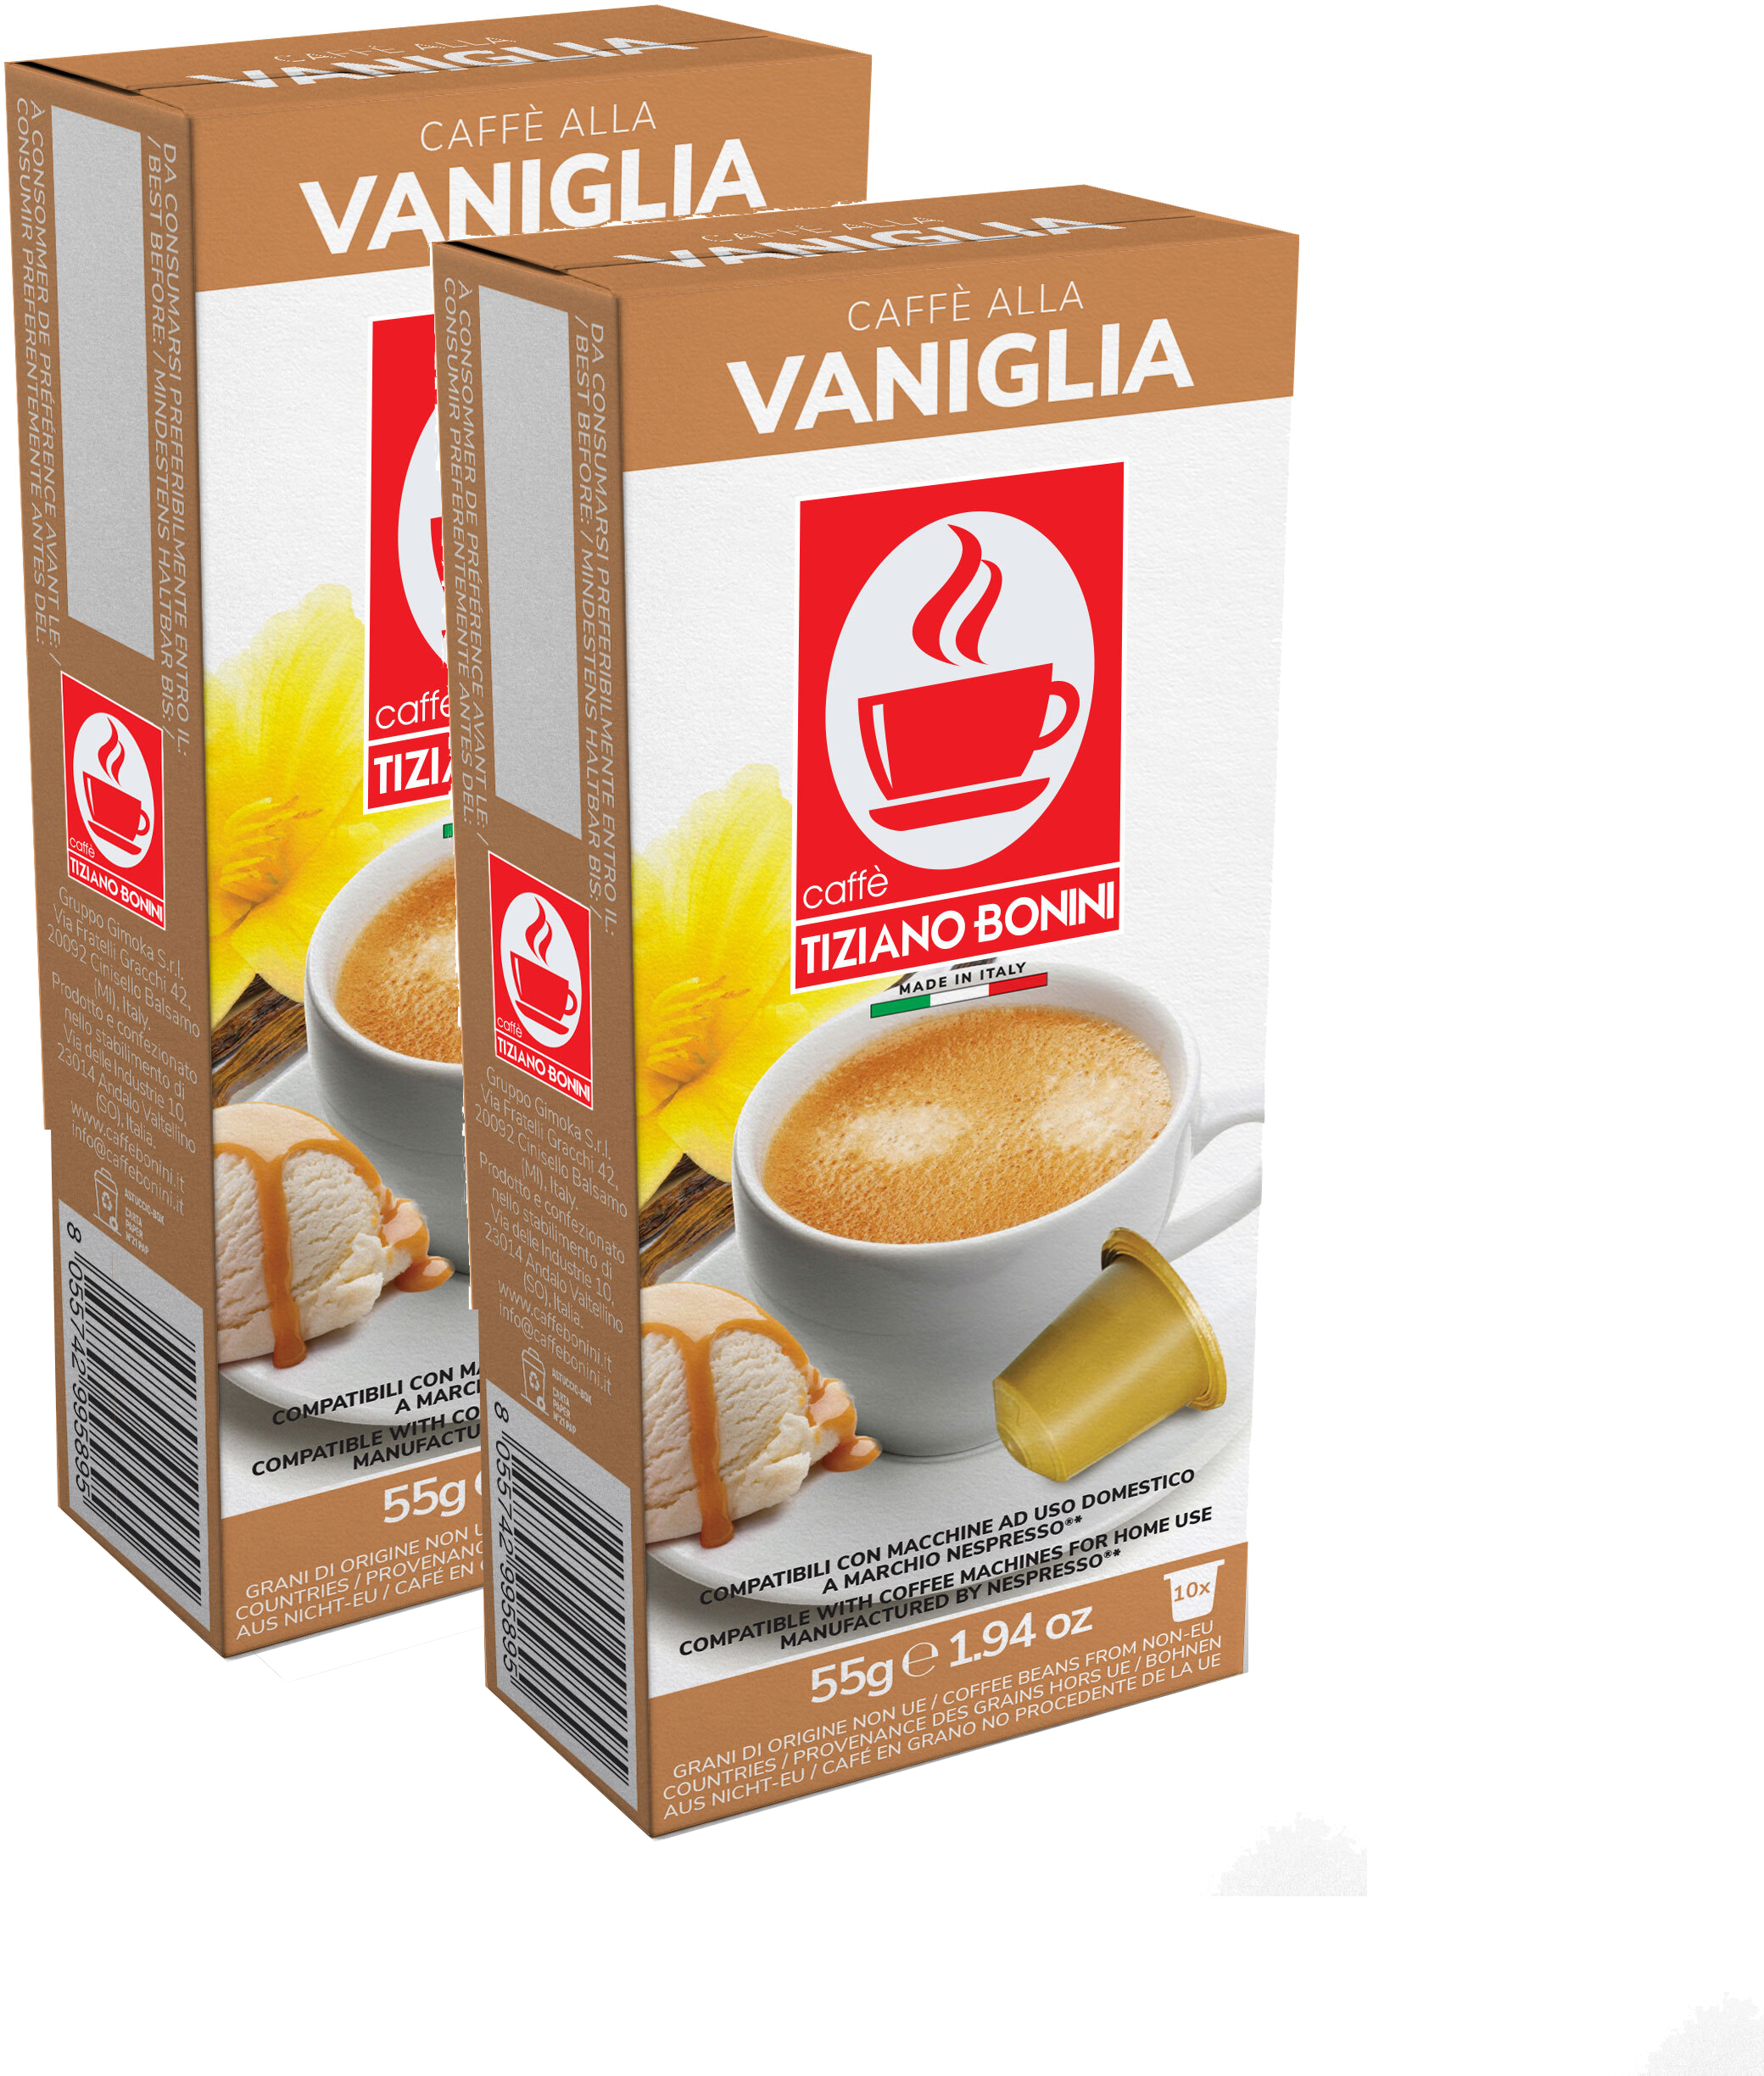 Кофе в капсулах Caffe Tiziano Bonini Vaniglia для Nespresso, 10 шт по 5,5 г, 2 упаковки